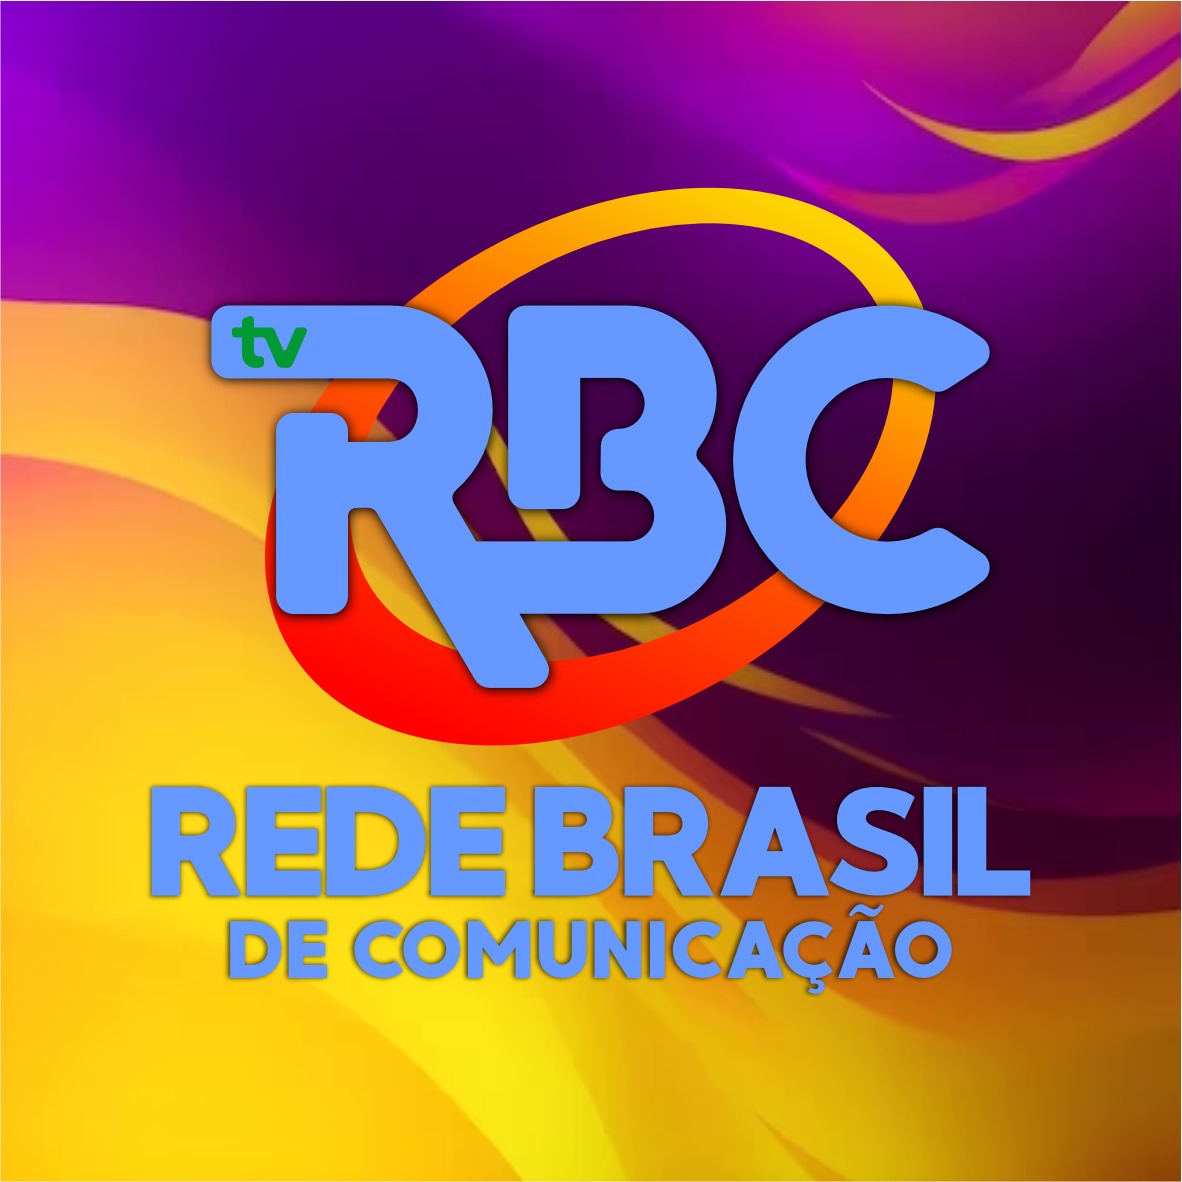 TV RBC